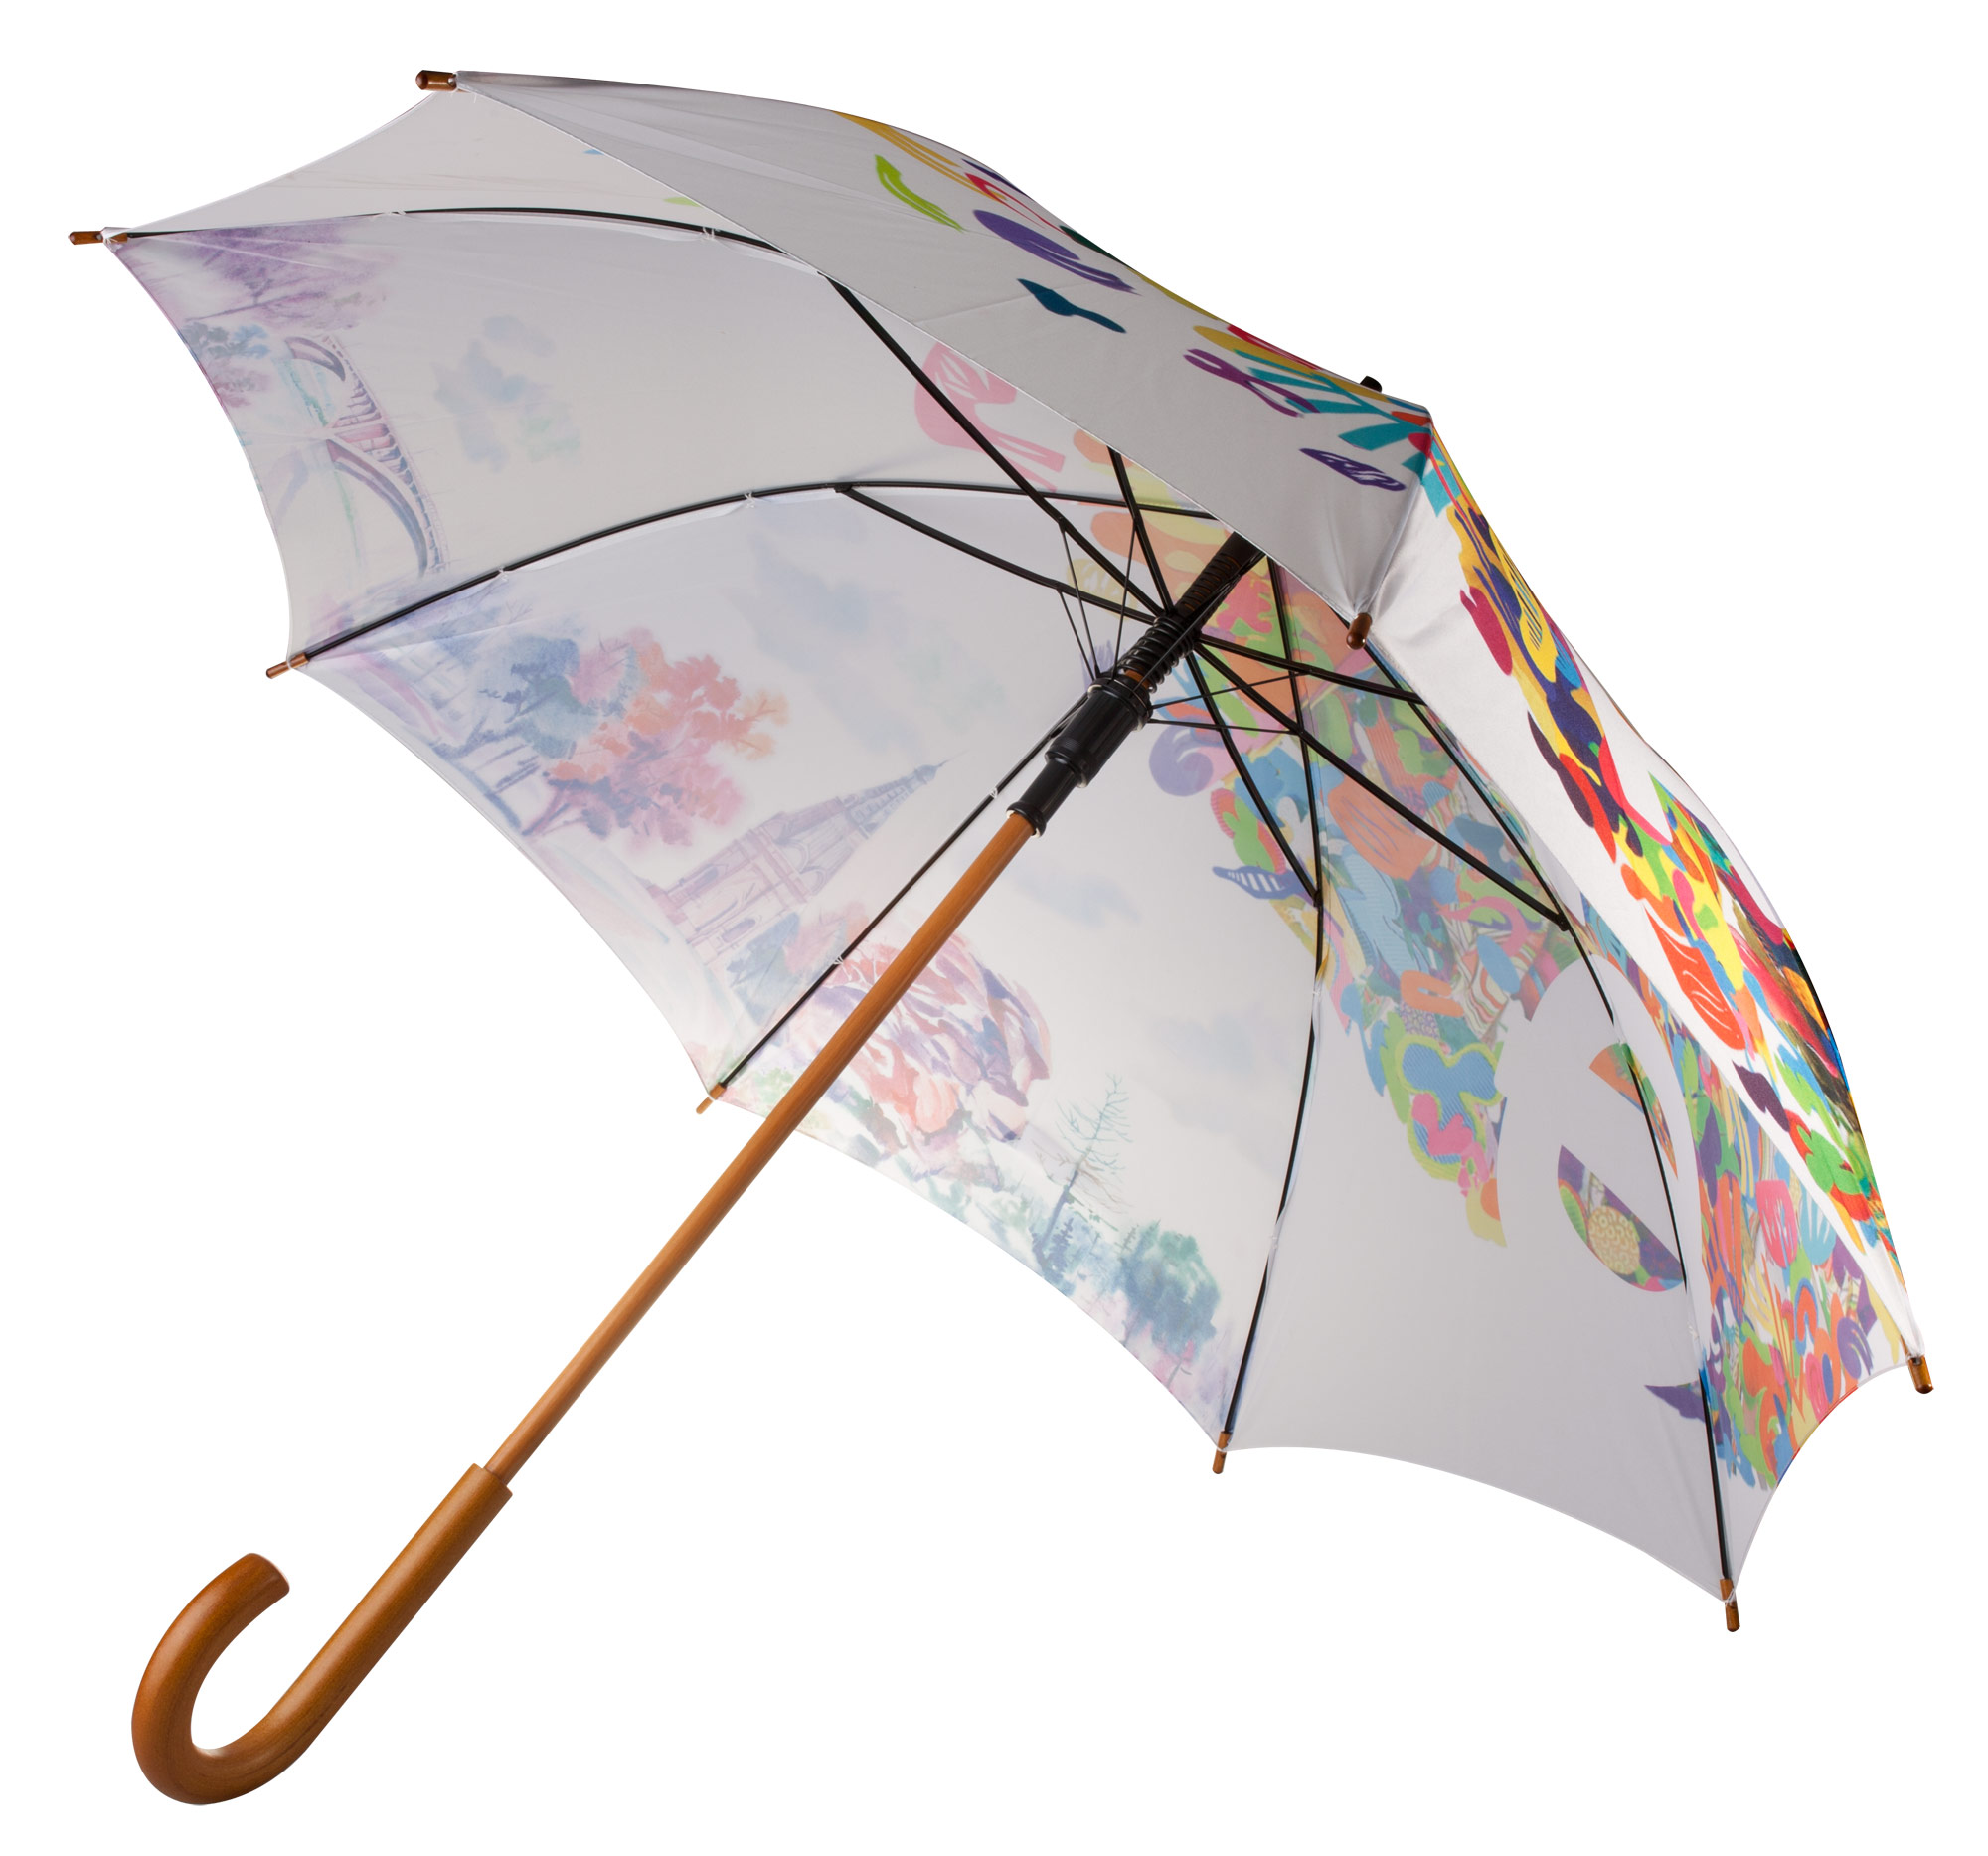 Пример зонта с полноцветной печатью